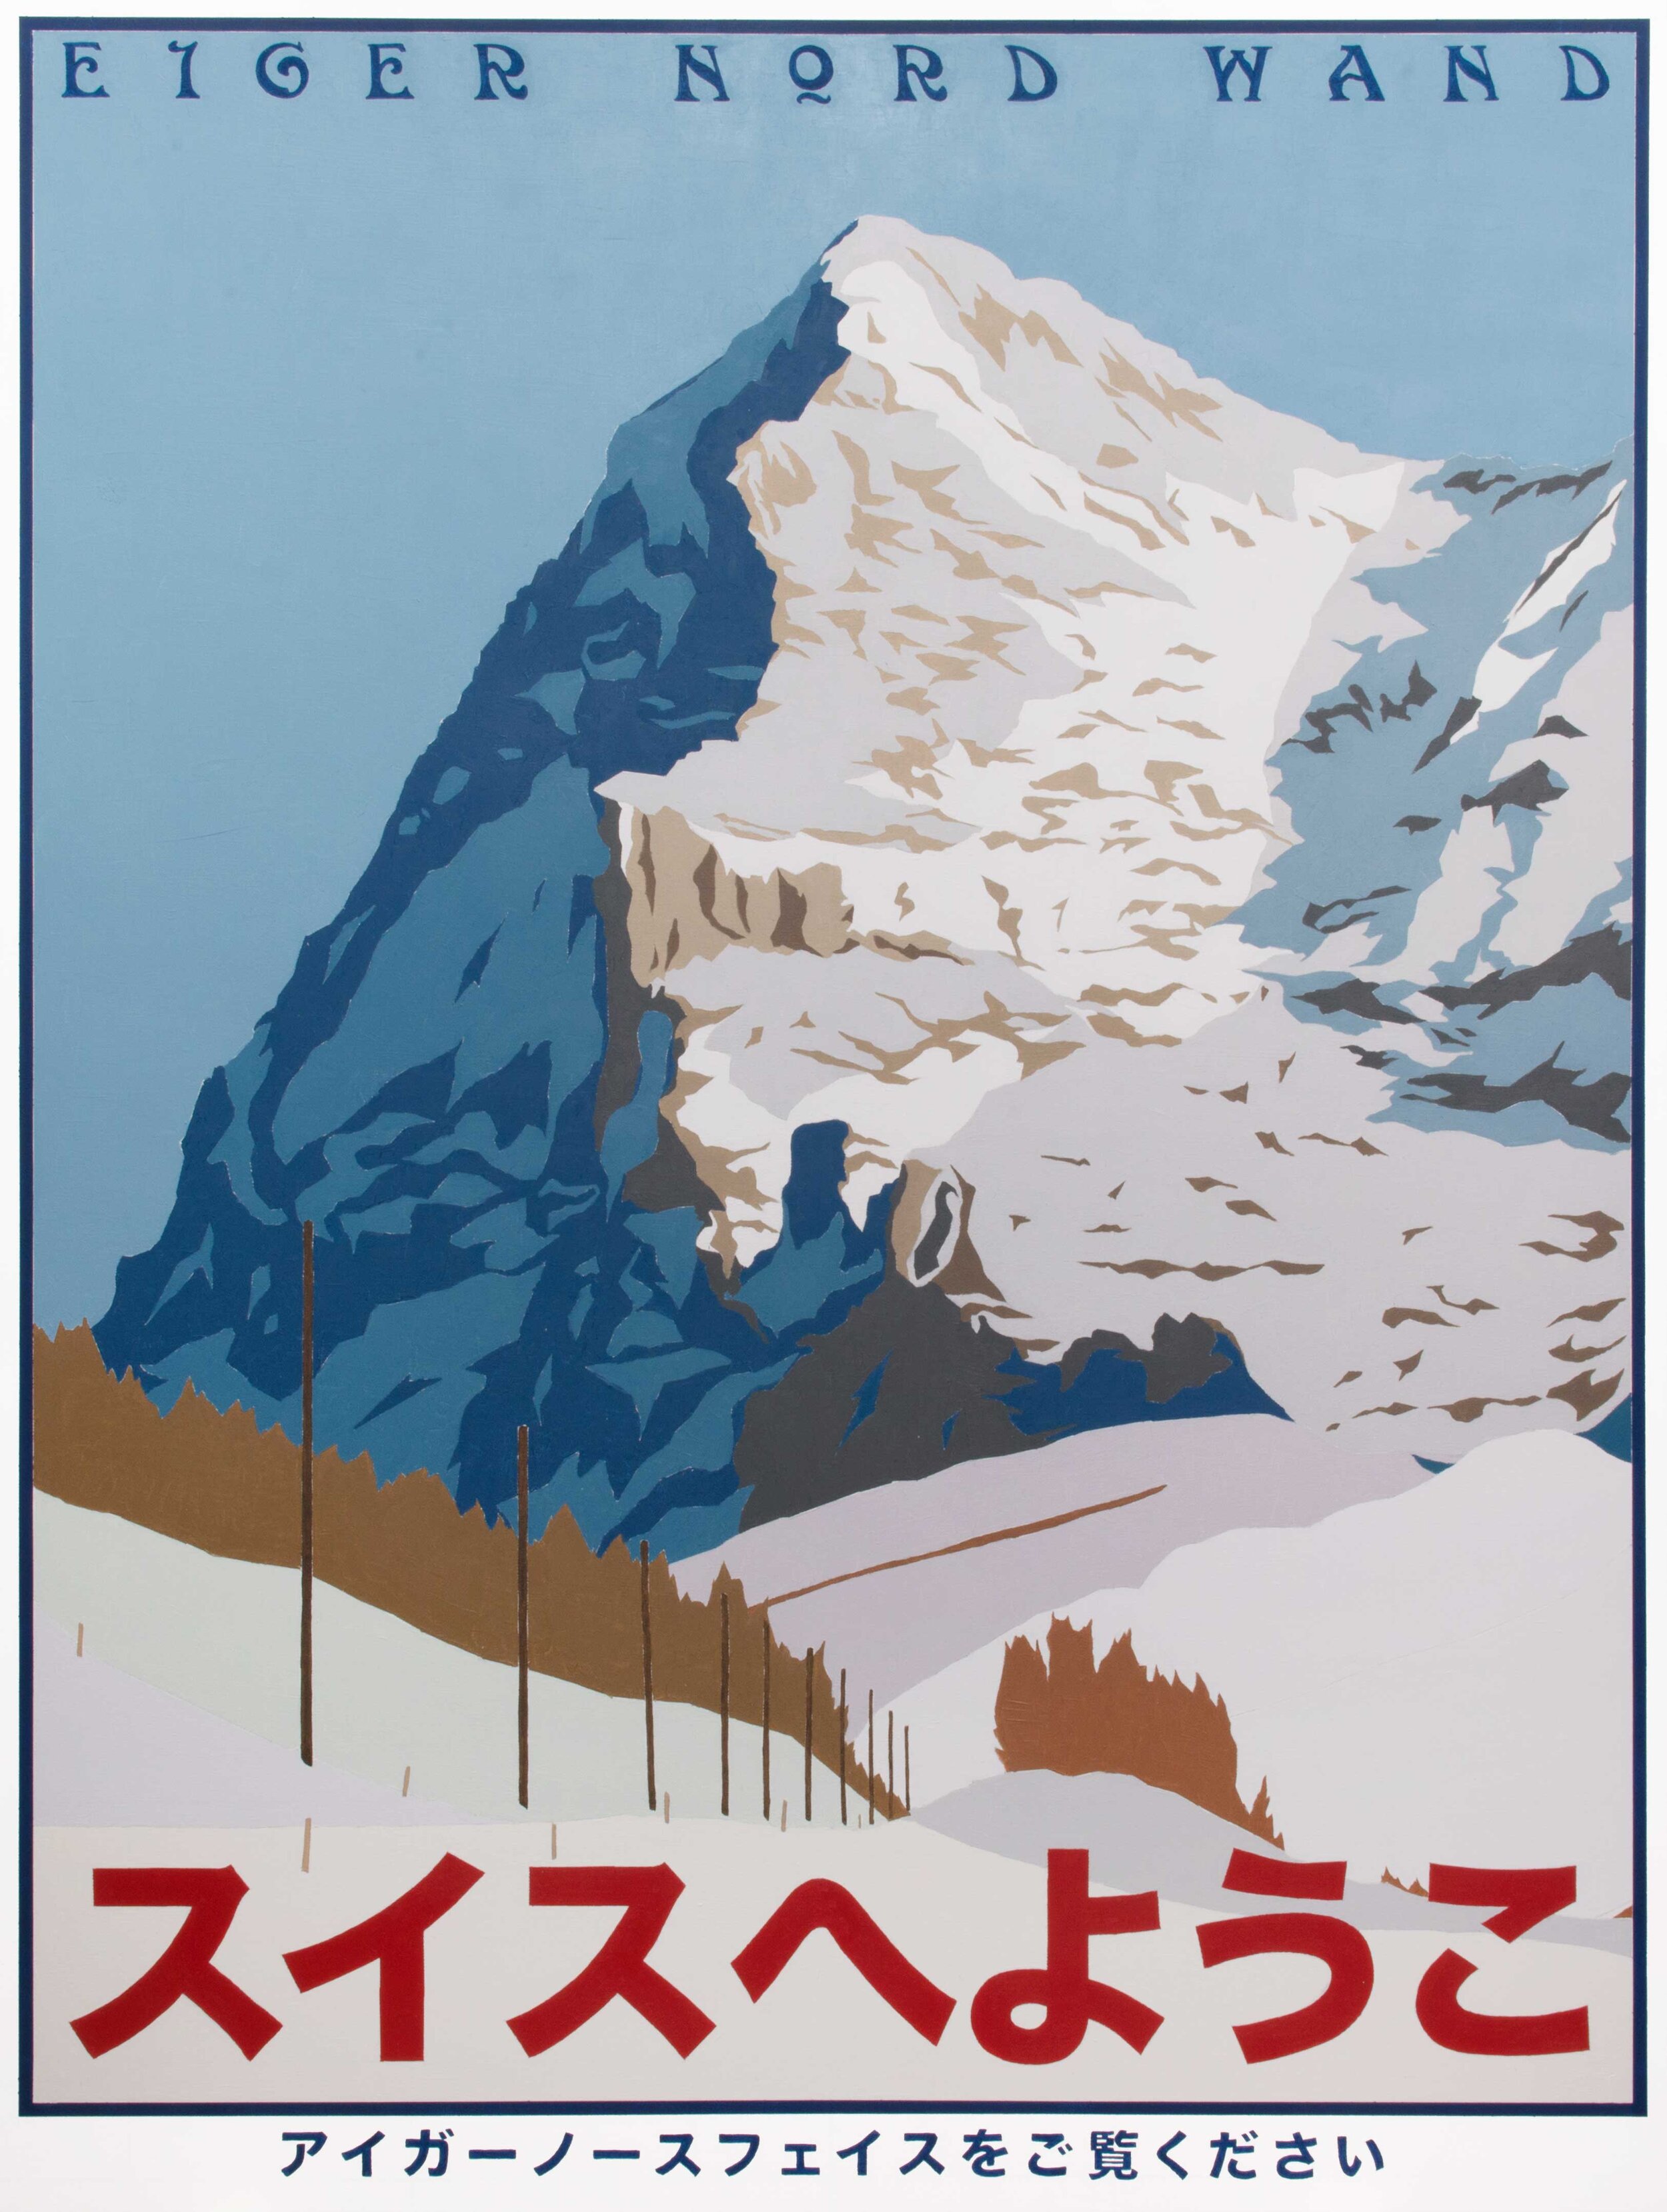 Eiger Nordwand (2020)